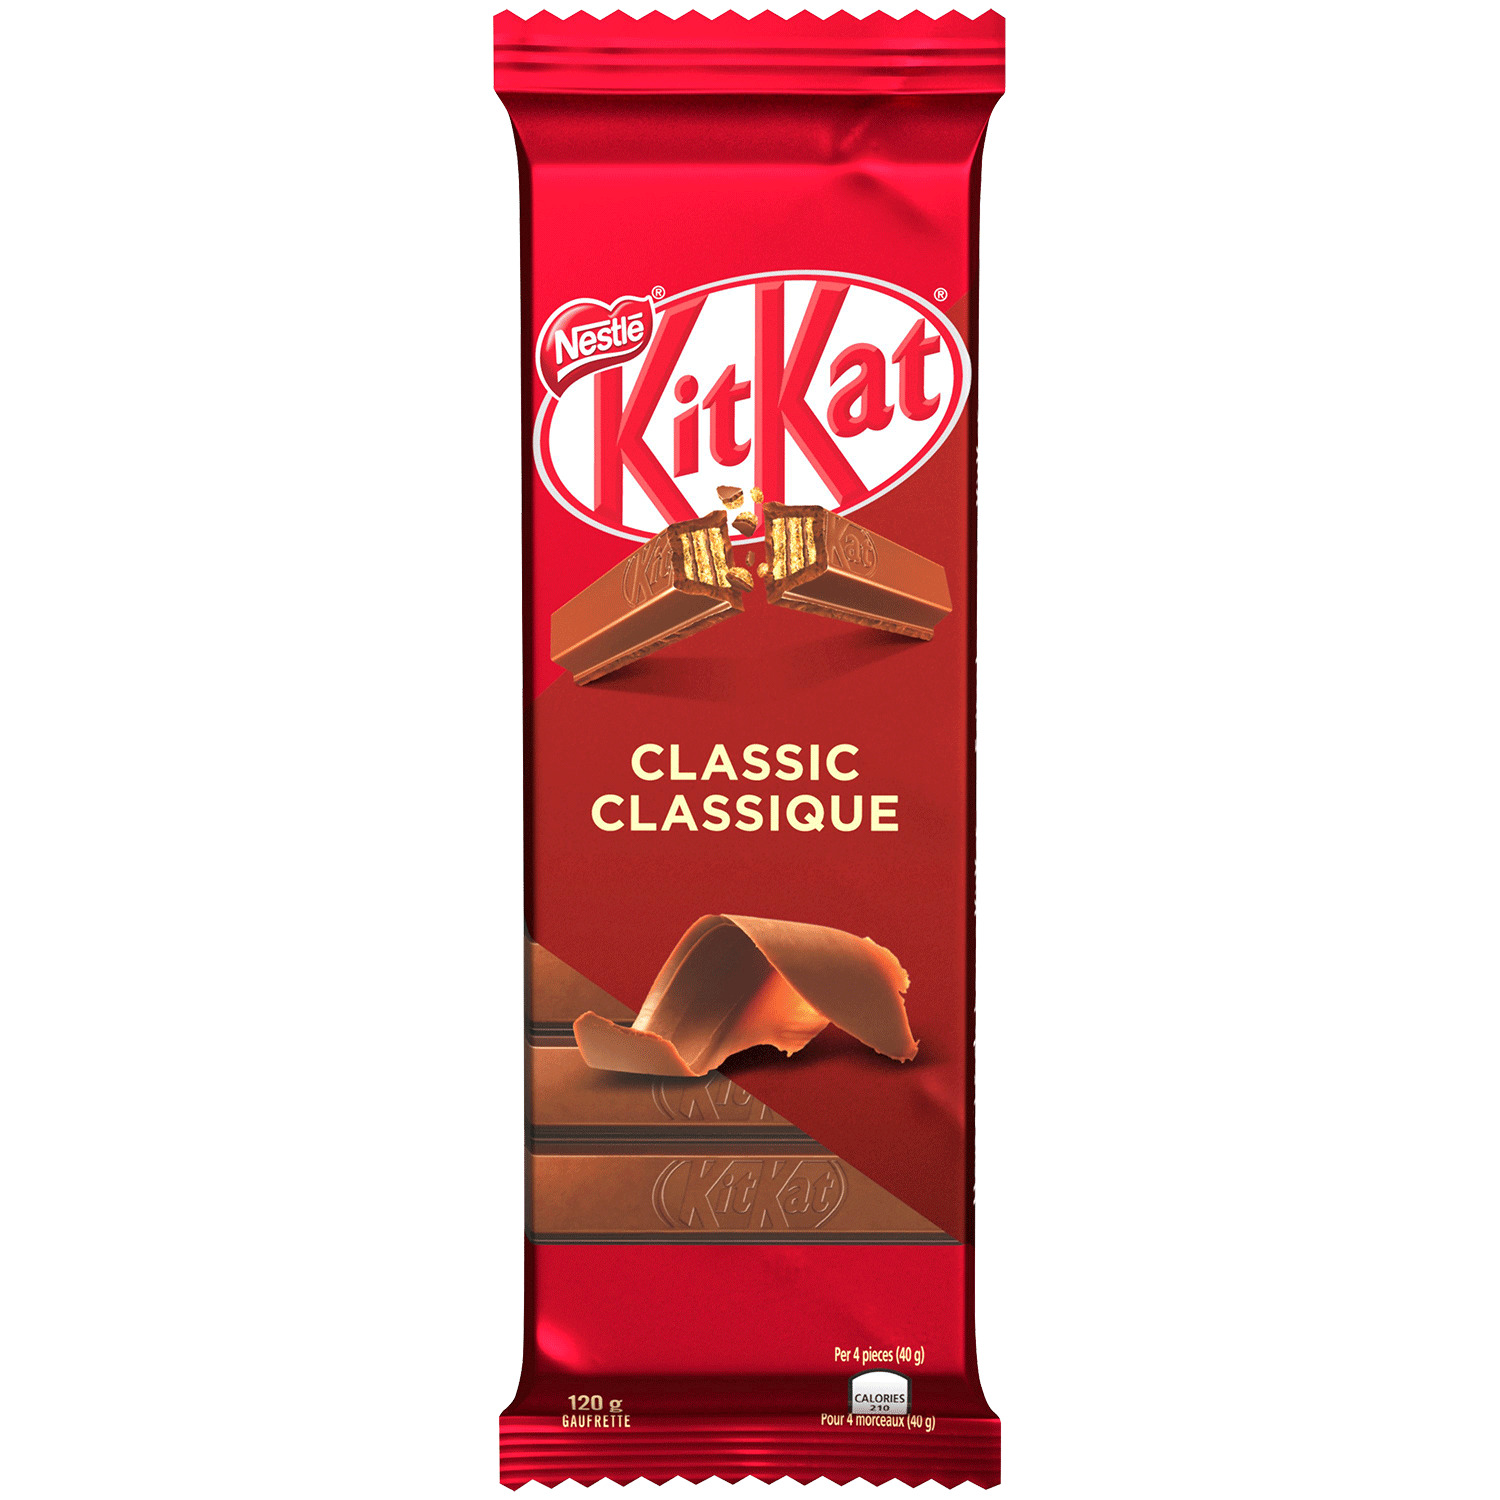 Nestlé - KitKat - Classic wafer bar, 120g